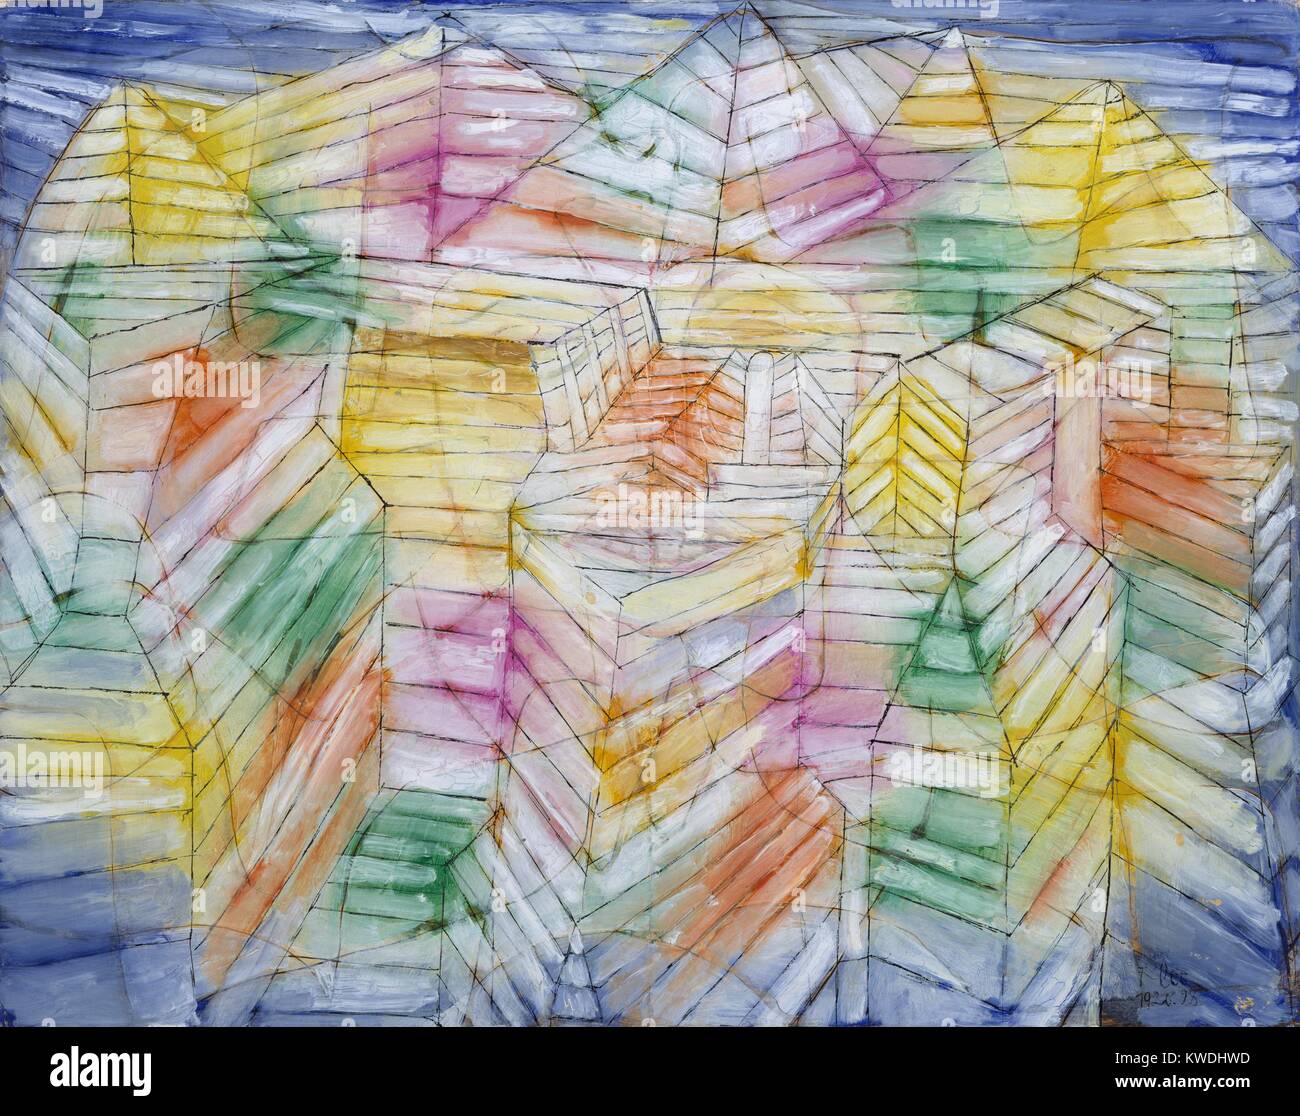 THEATER - Berg - Bau, von Paul Klee, 1920, Schweizer zeichnen, Öl, Gouache und Tinte auf Papier. Illusionistische geometrische Abstraktion, kombiniert mit symbolischen Sonne und Mond und Pfeile (BSLOC 2017 7 52) Stockfoto